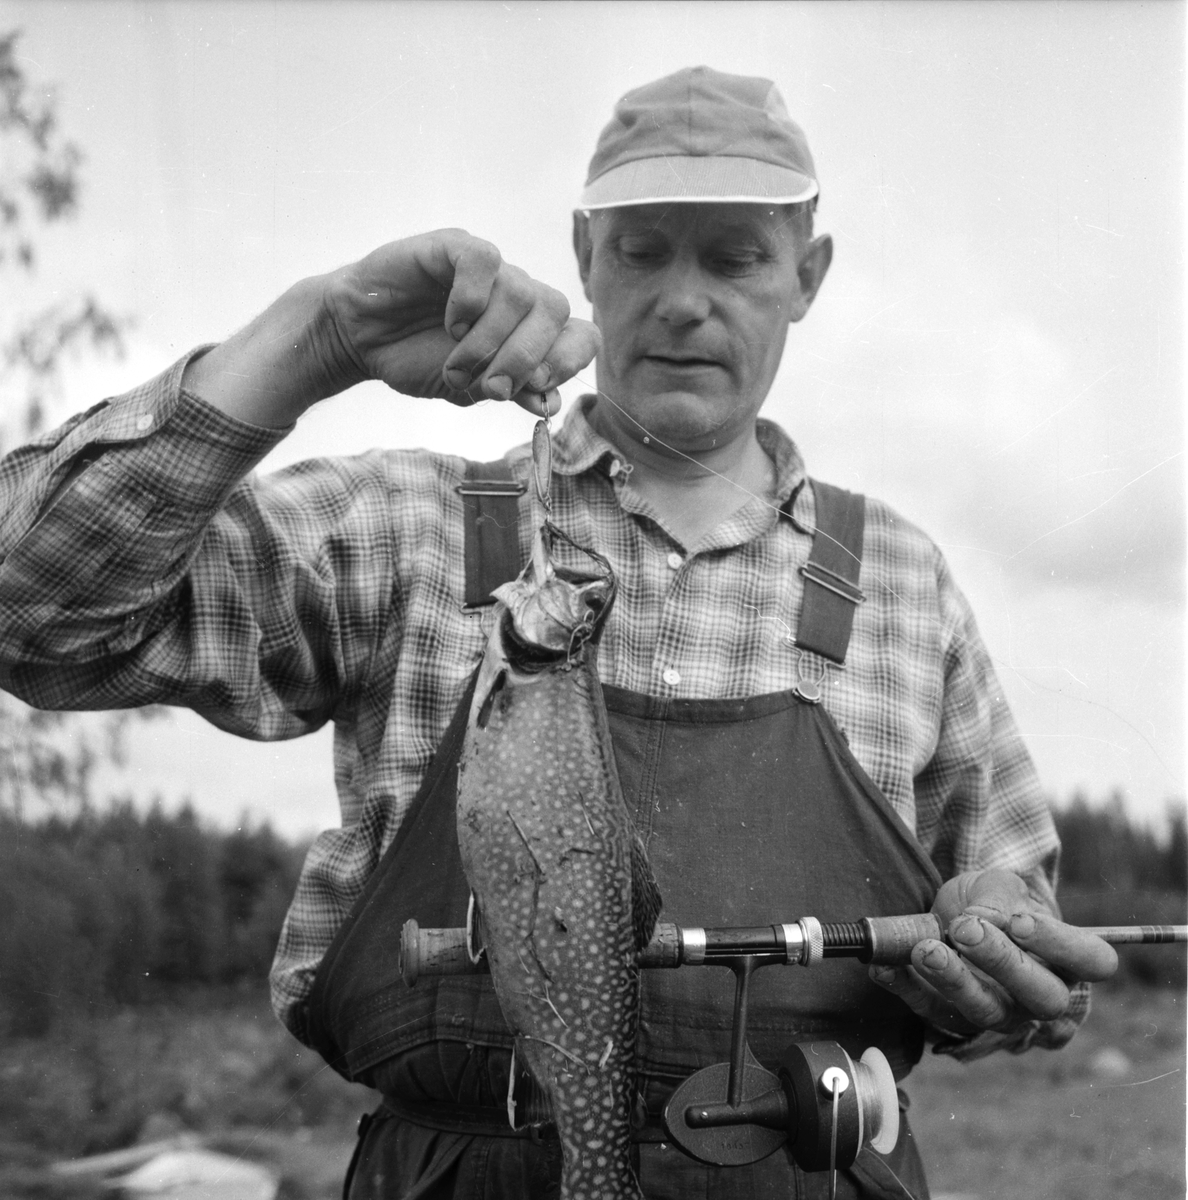 Järvsö-Nor. Öringsodling i Nor
Olof Olsson  8/8-1960